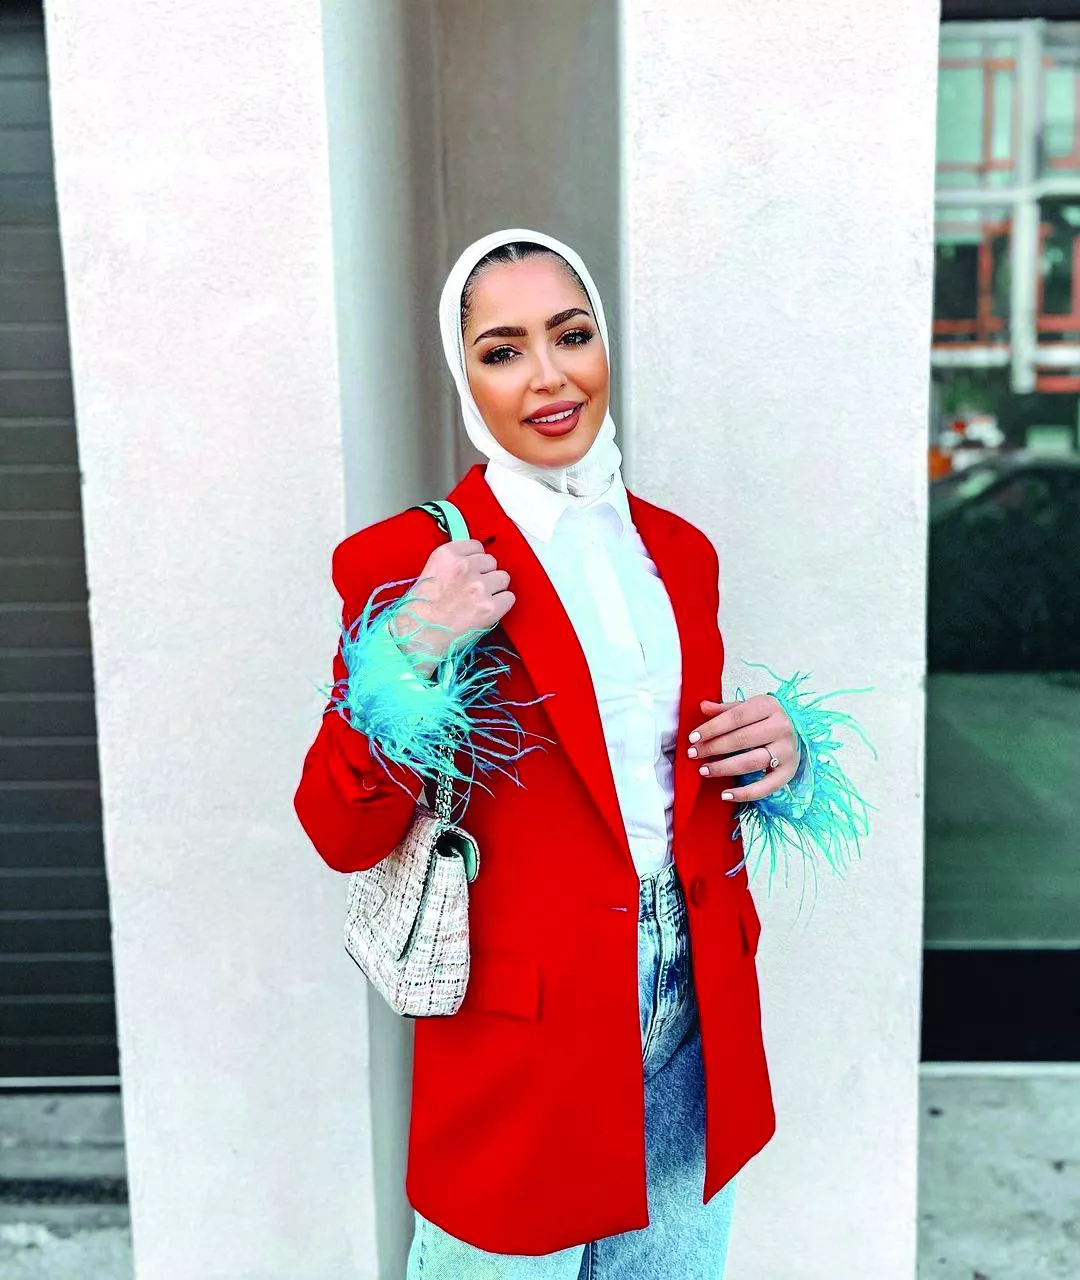 طرق تنسيق الملابس في رمضان 2022... انقلي إطلالاتكِ إلى مستوى آخر